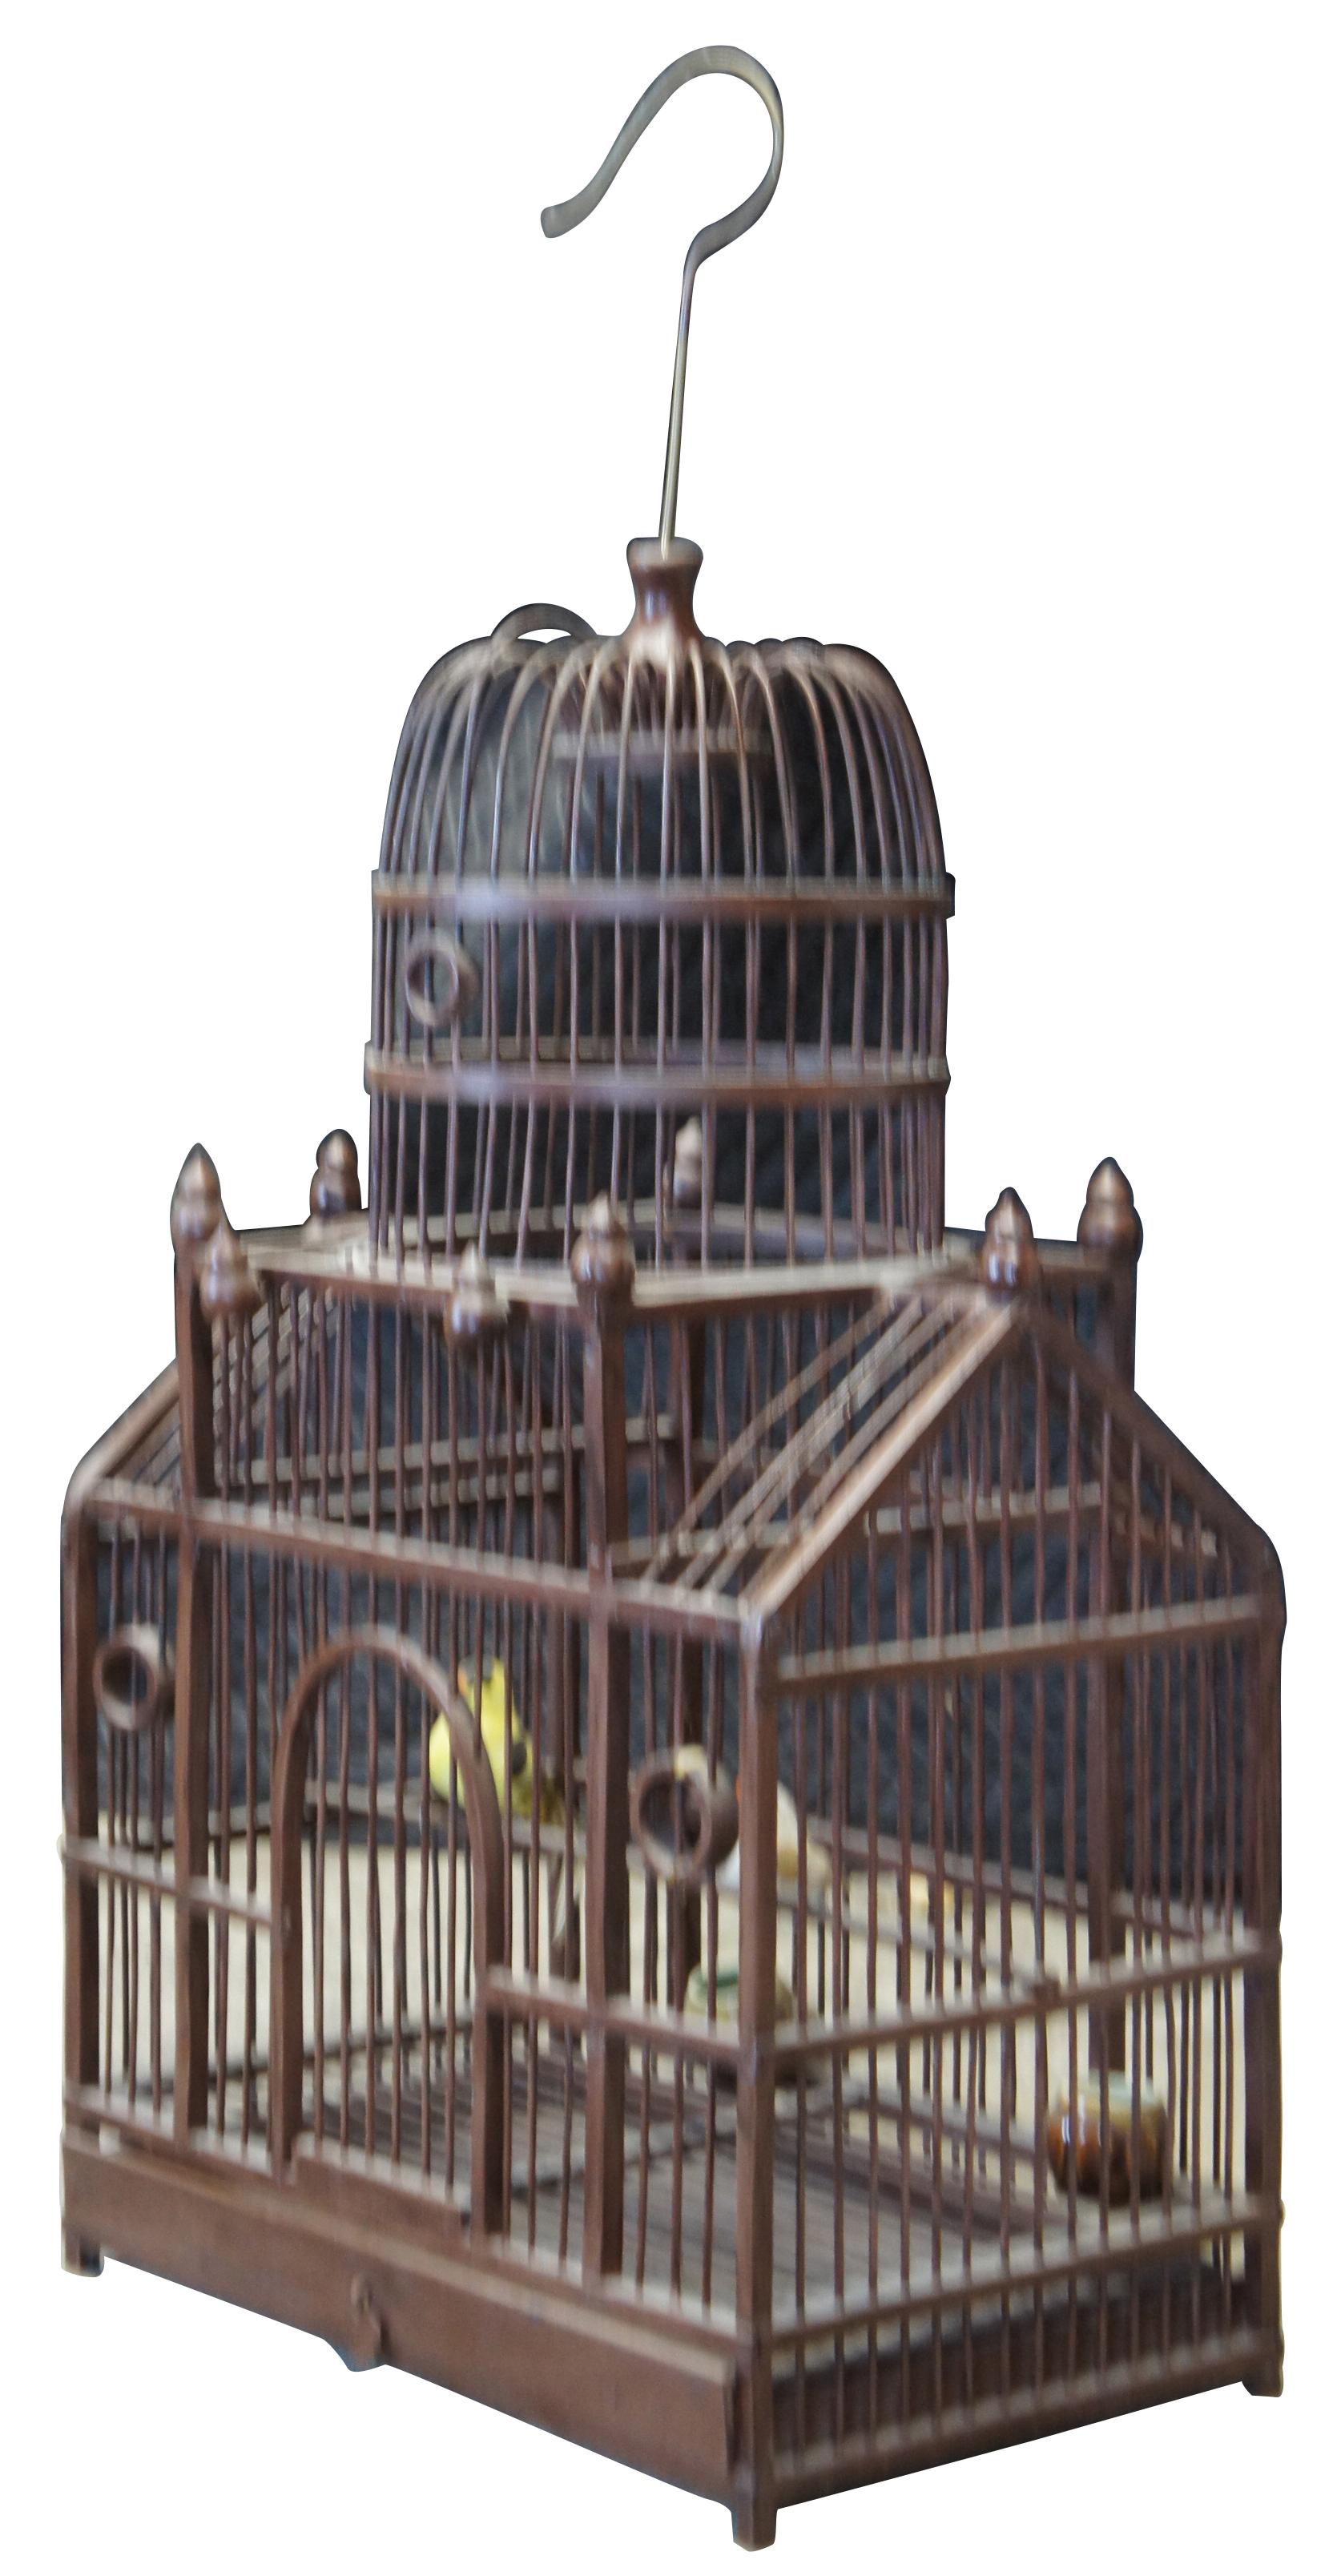 Cage à oiseaux de style victorien avec un sommet en forme de dôme, des fenêtres circulaires et des épis de faîtage tournés.  Comprend deux faux oiseaux et deux mangeoires en céramique.

DIMENSIONS

15,5